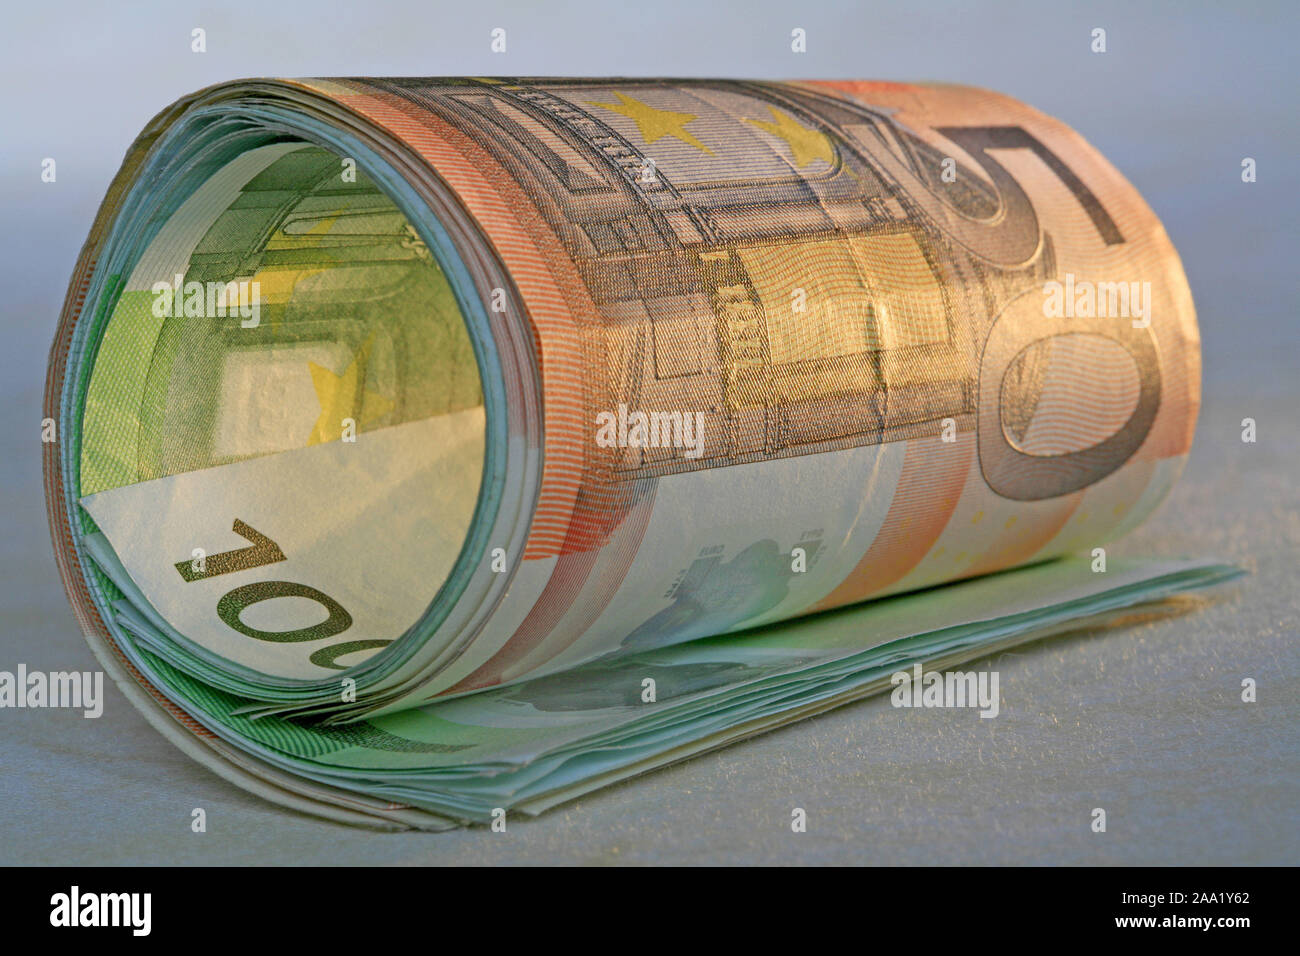 Zusammengerollte Euro Geldscheine / Rolled Euro bank notes Stock Photo